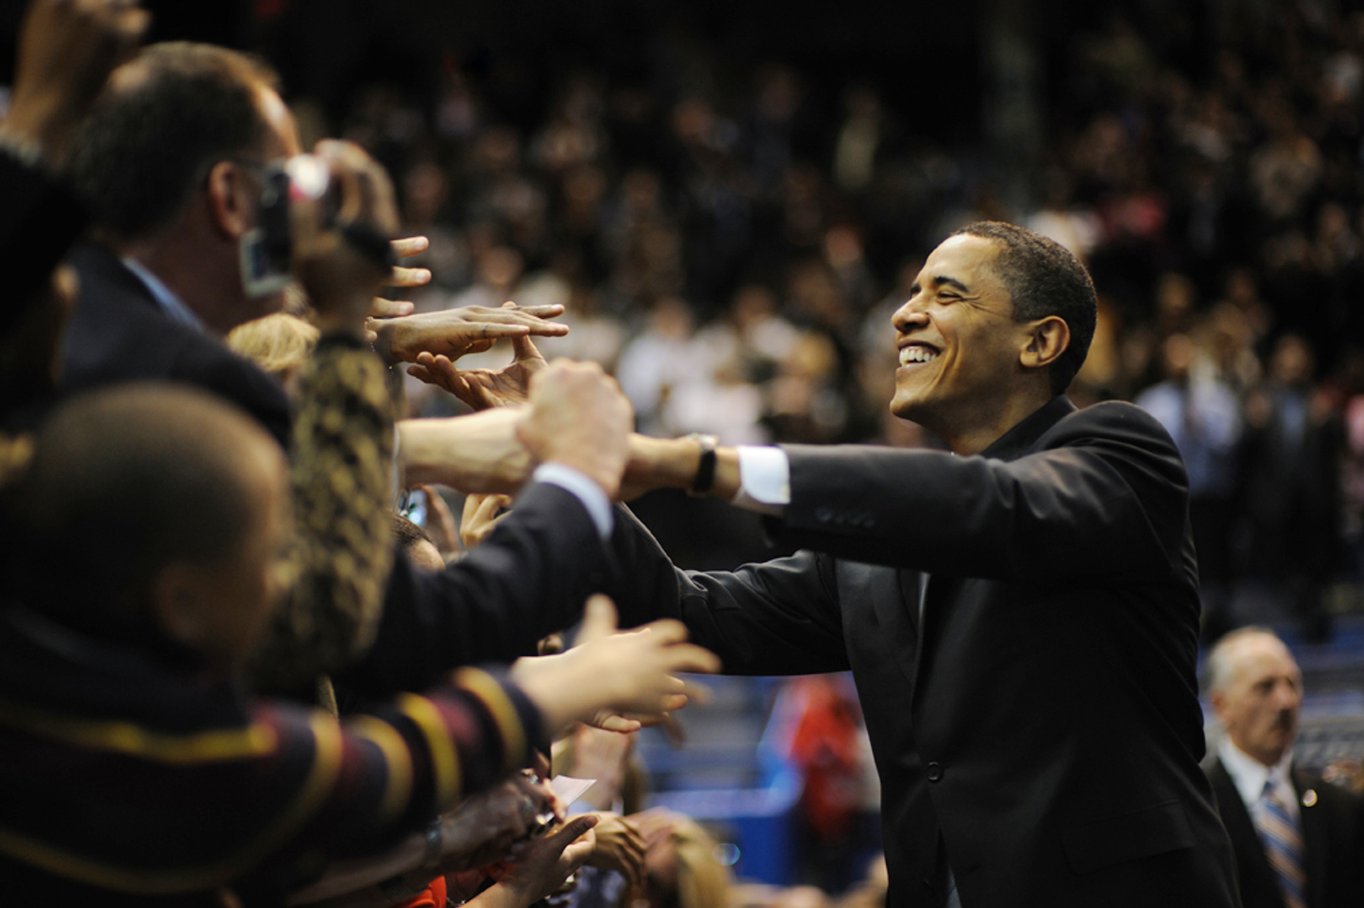 Фото - Сделано людьми: Выборы Барака Обамы: 1364x908 / 117 Кб